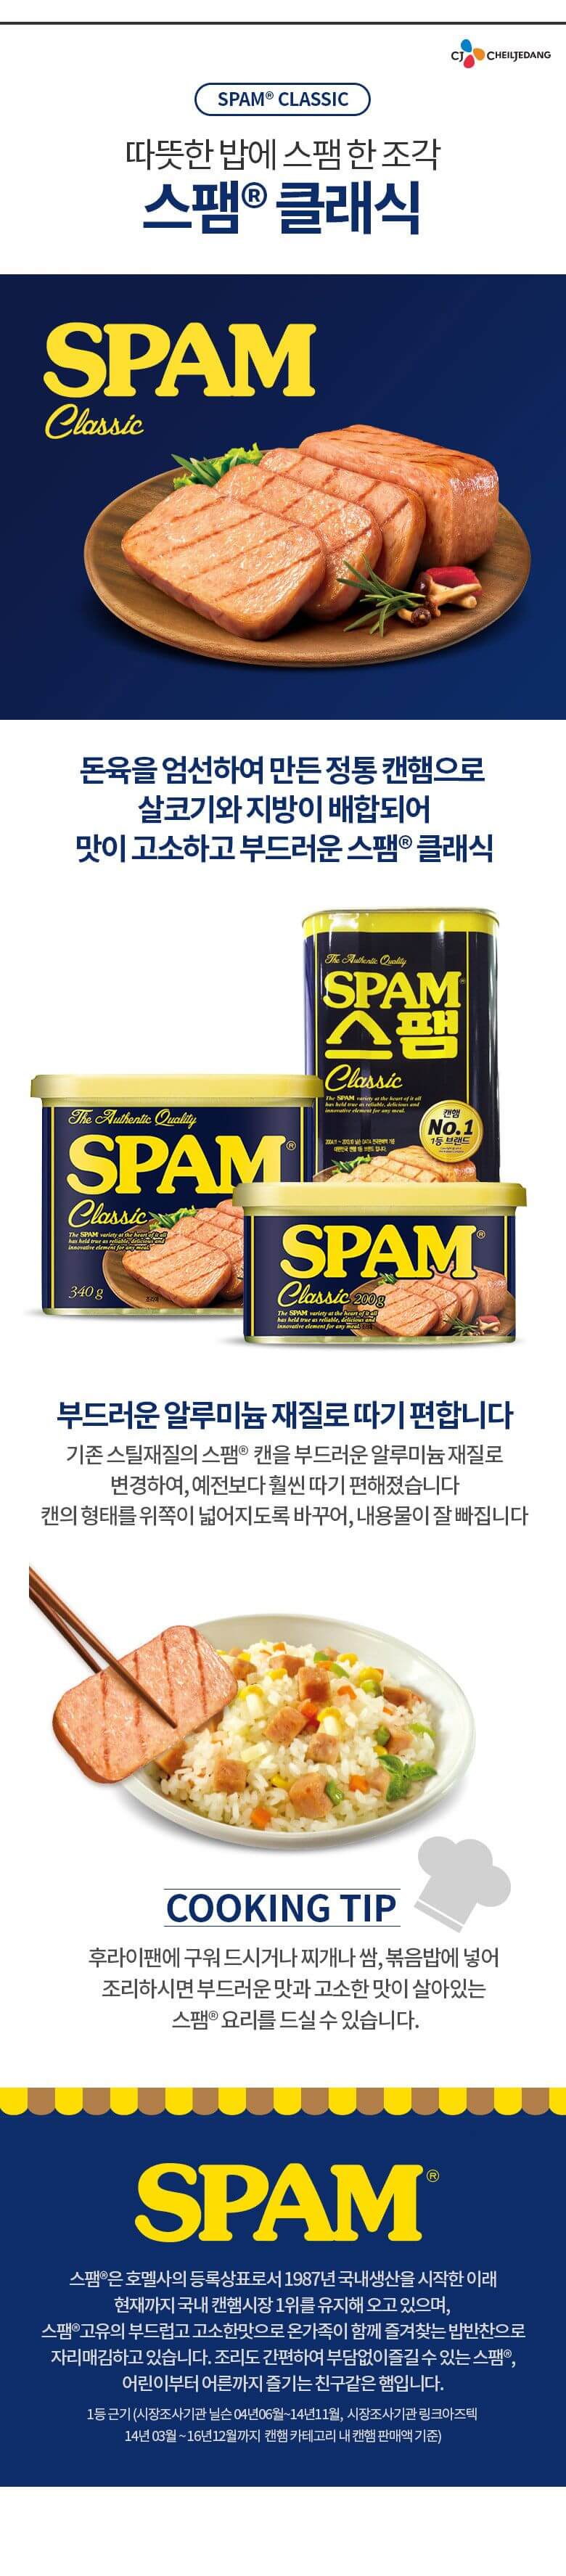 韓國食品-[CJ] Spam[Classic] 300g